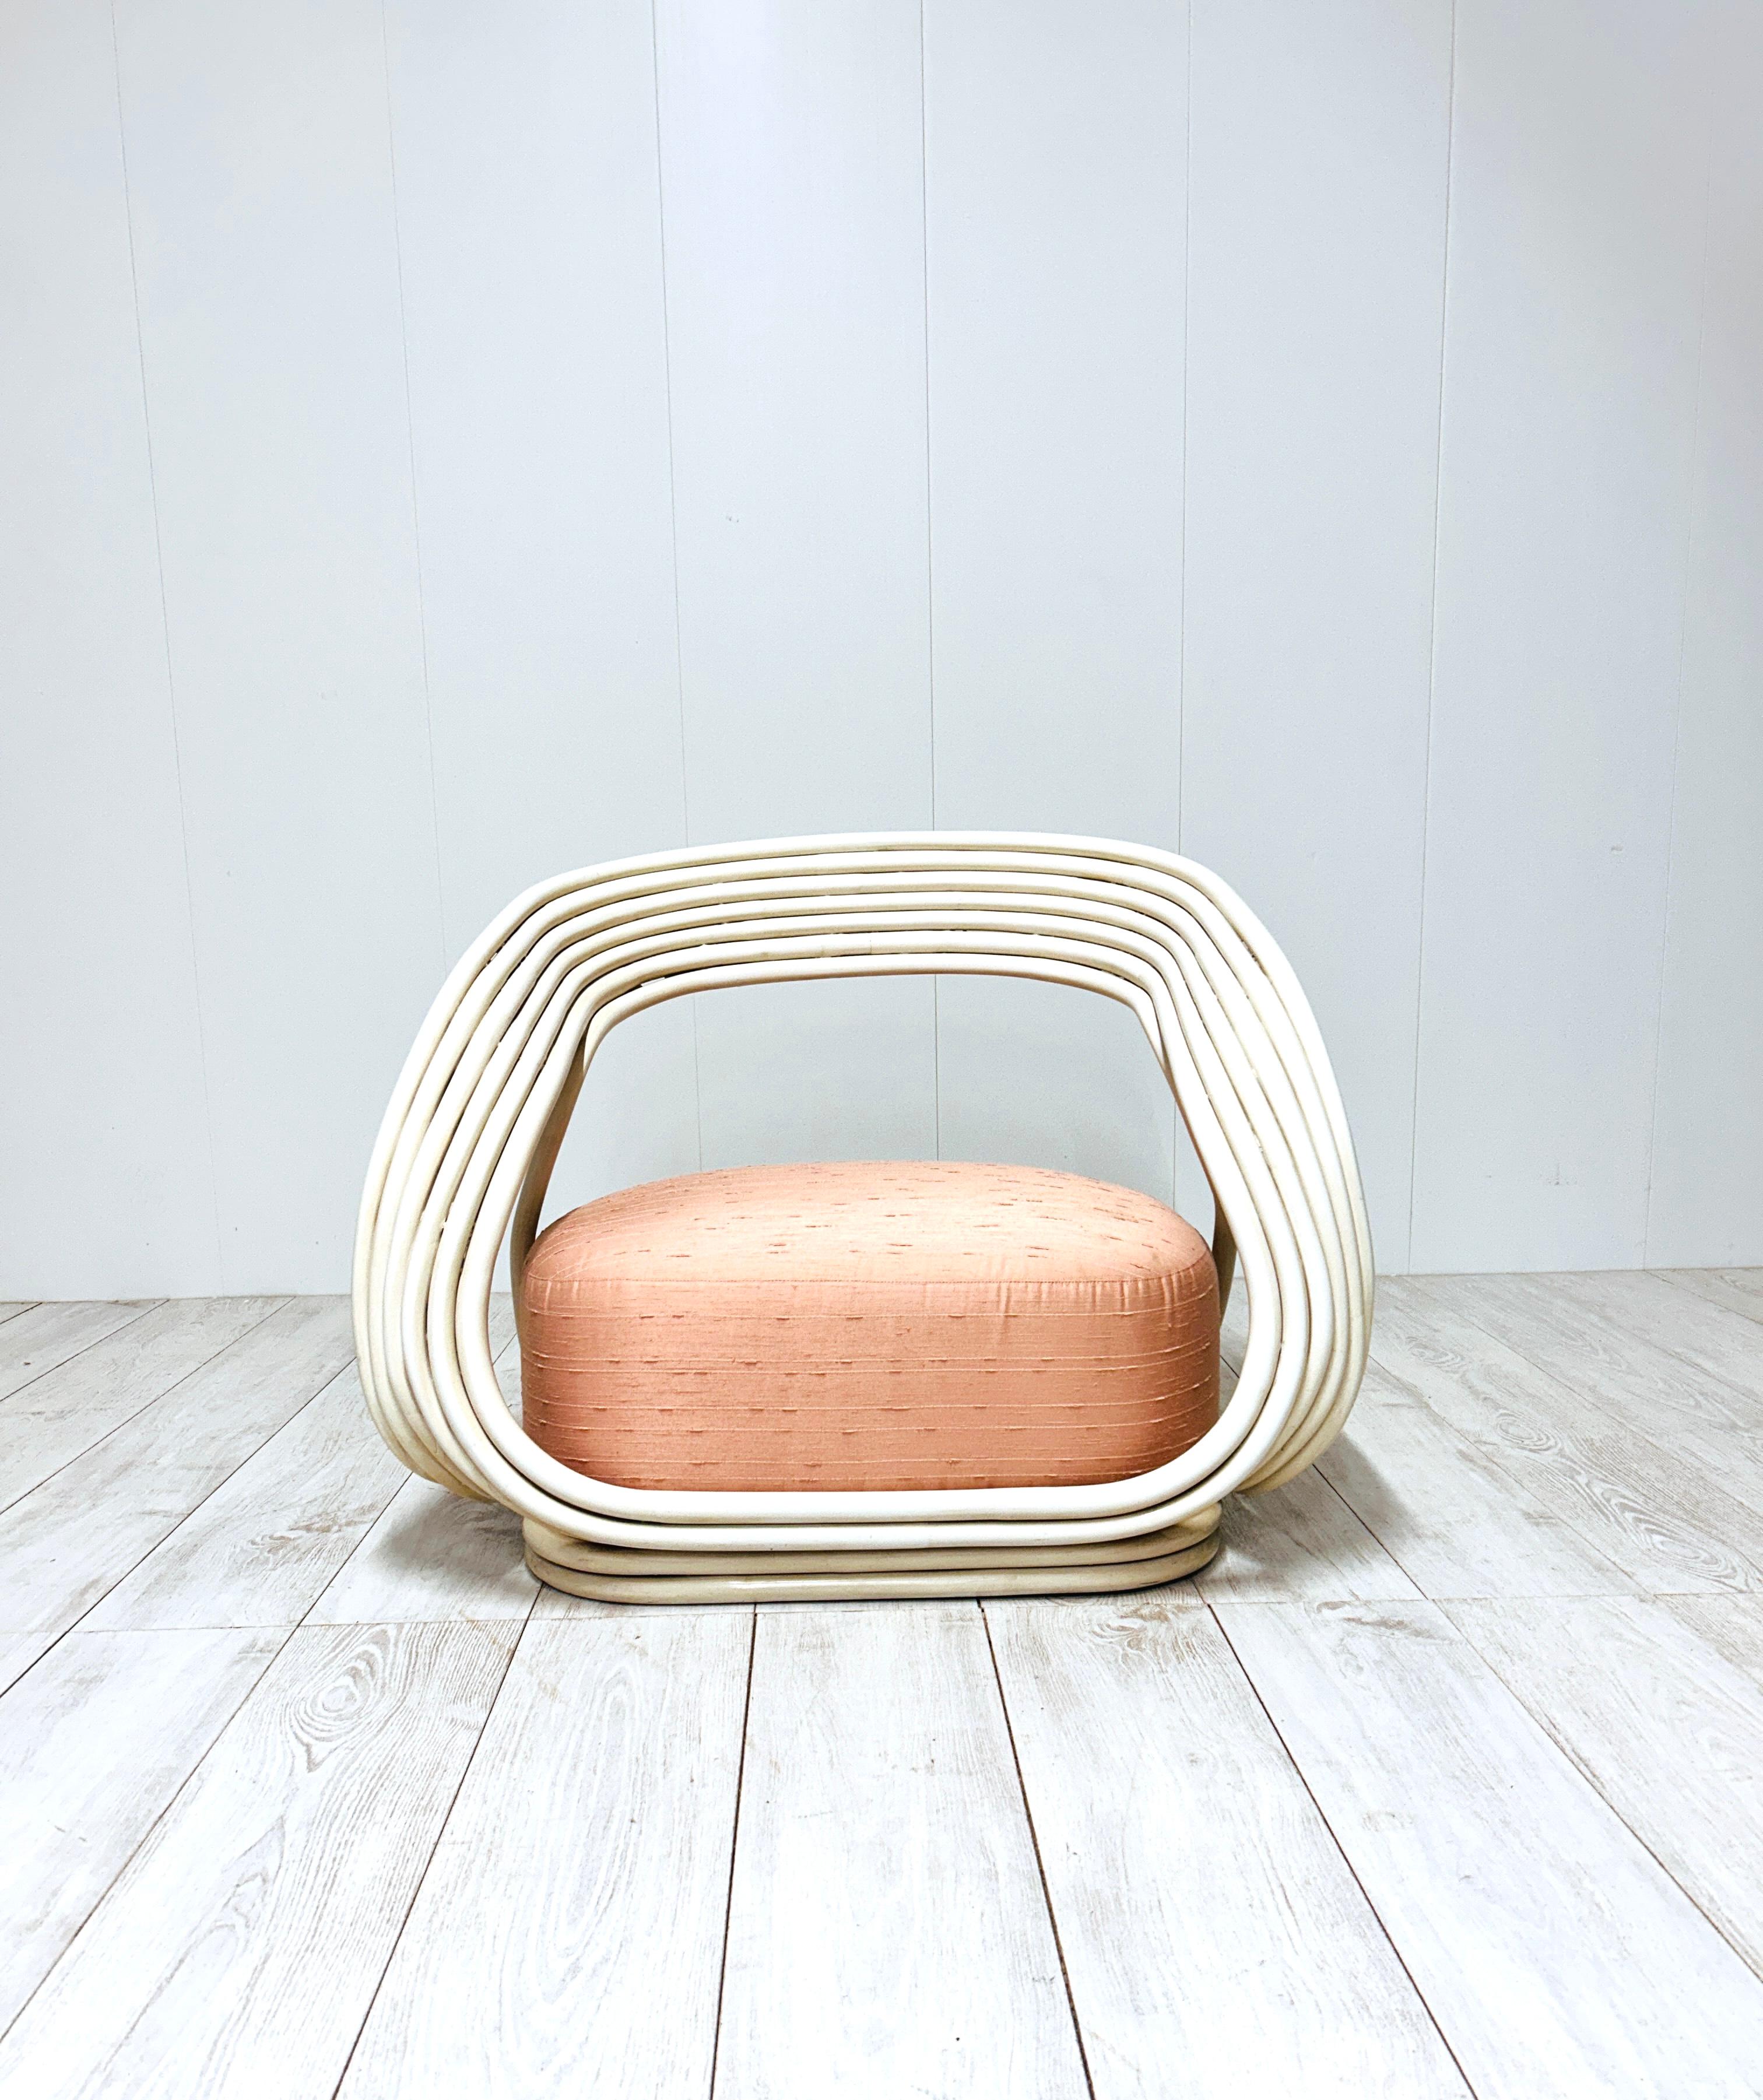 Progettata da Giovanni Travasa nel 1965, Eva è un'elegante poltrona realizzata in flessuoso giunco curvato e con un comodo cuscino come seduta.

La versione in vendita si presenta nella colorazione panna, con cuscino con tessuto originale nella